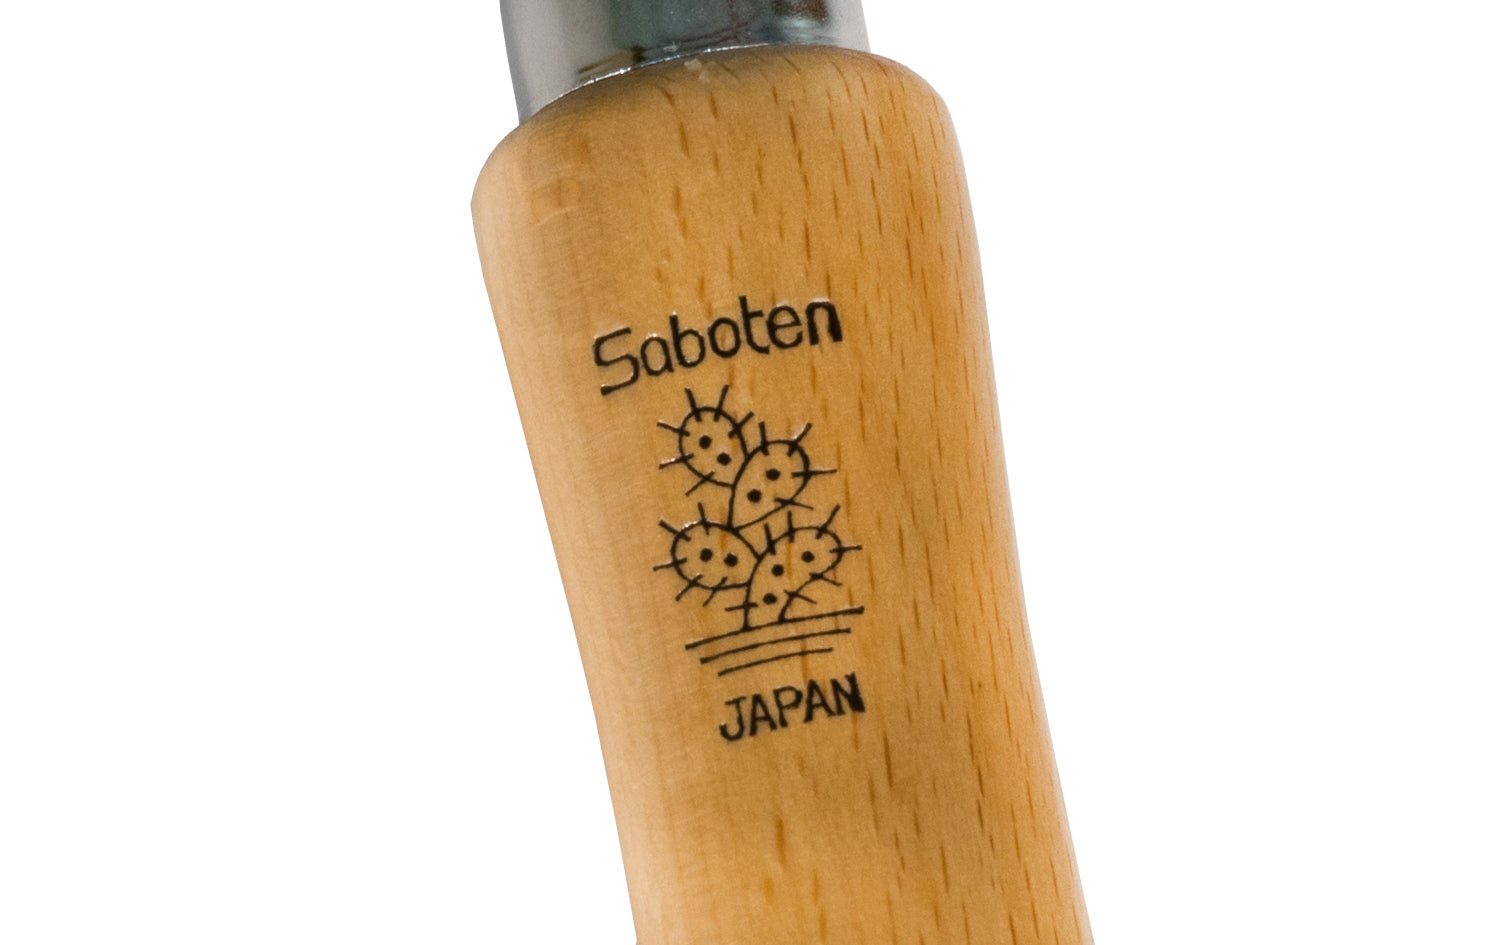 Japanese Saboten Transplanting Garden Trowel ~ Made in Japan